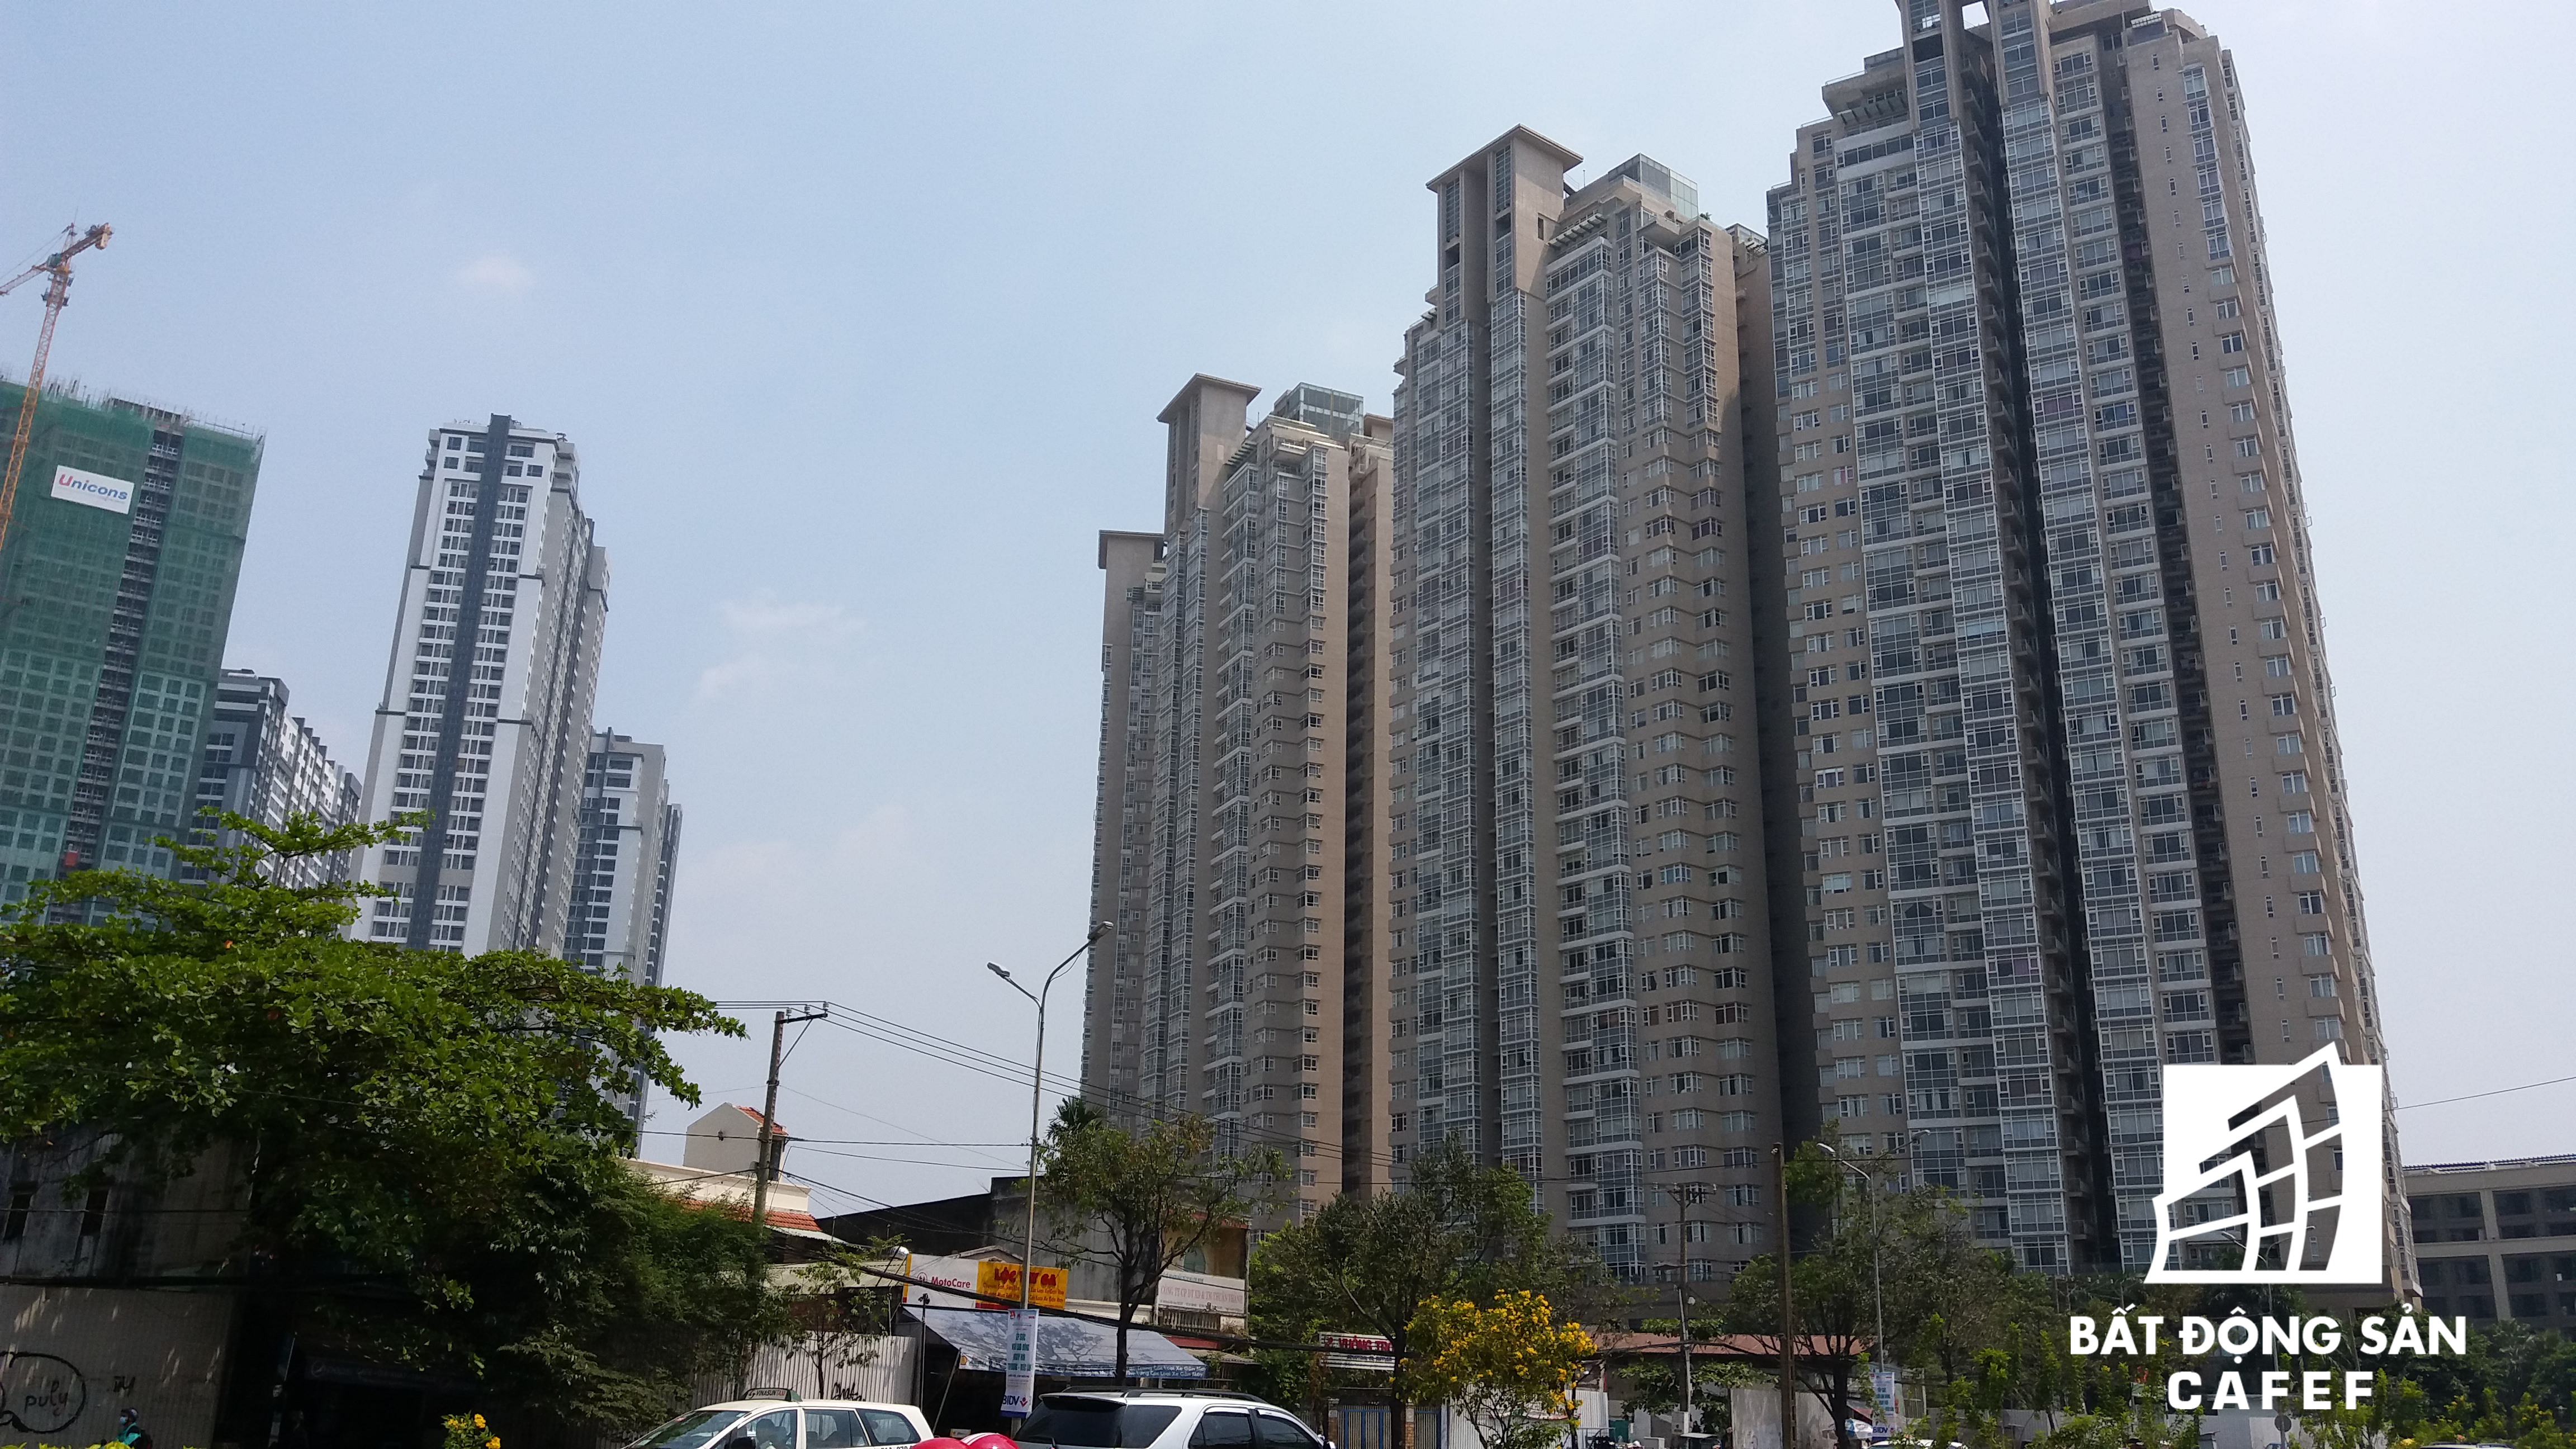 Cao ốc cao tầng đang đua nhau mọc lên trên cung đường Nguyễn Hữu Cảnh, tạo bộ mặt mới cho một đô thị hiện đại ở khu vực này.